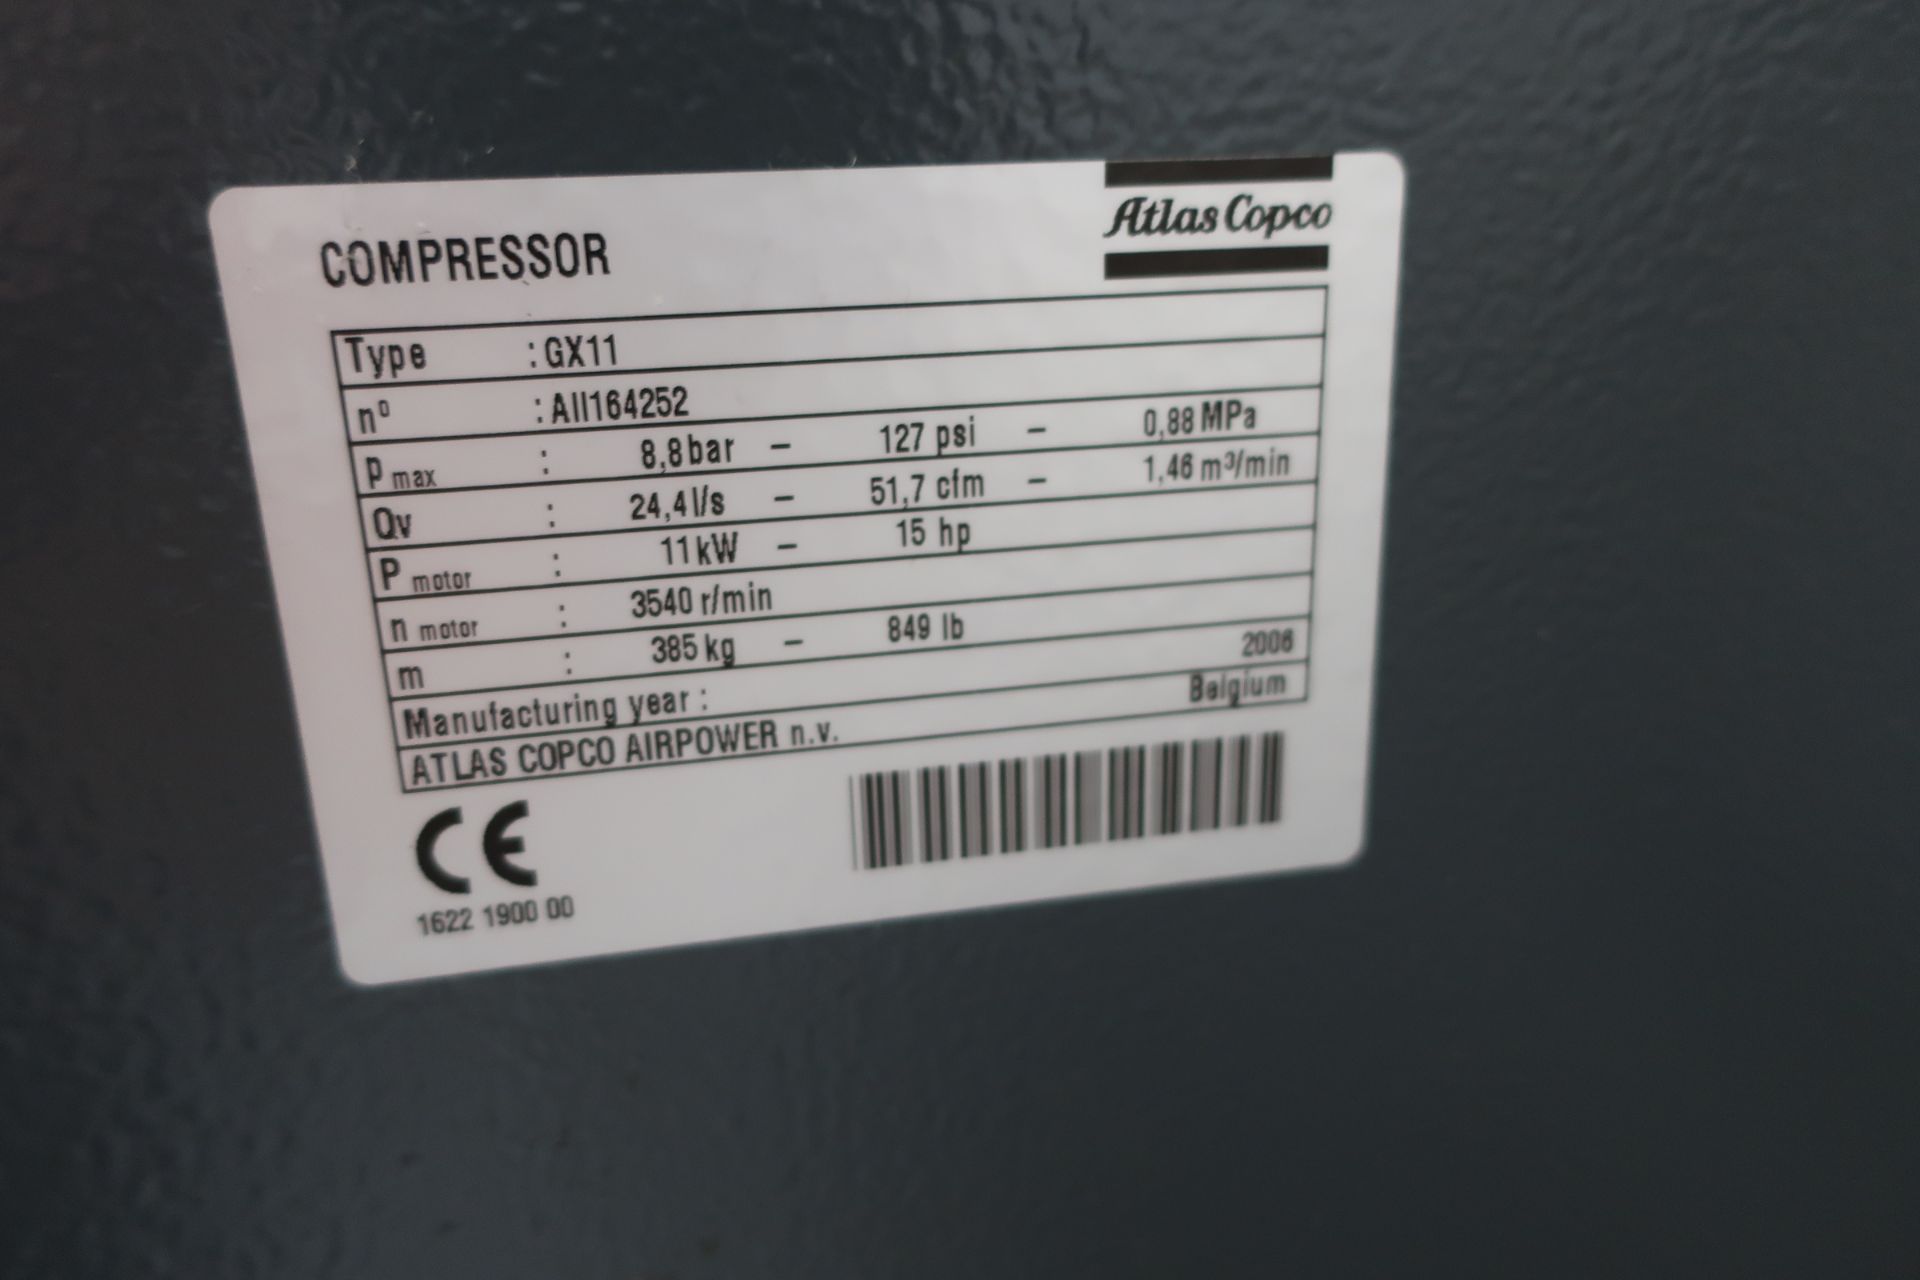 Atlas Copco GX11 Air Compressor, SN All164252 - Image 2 of 4